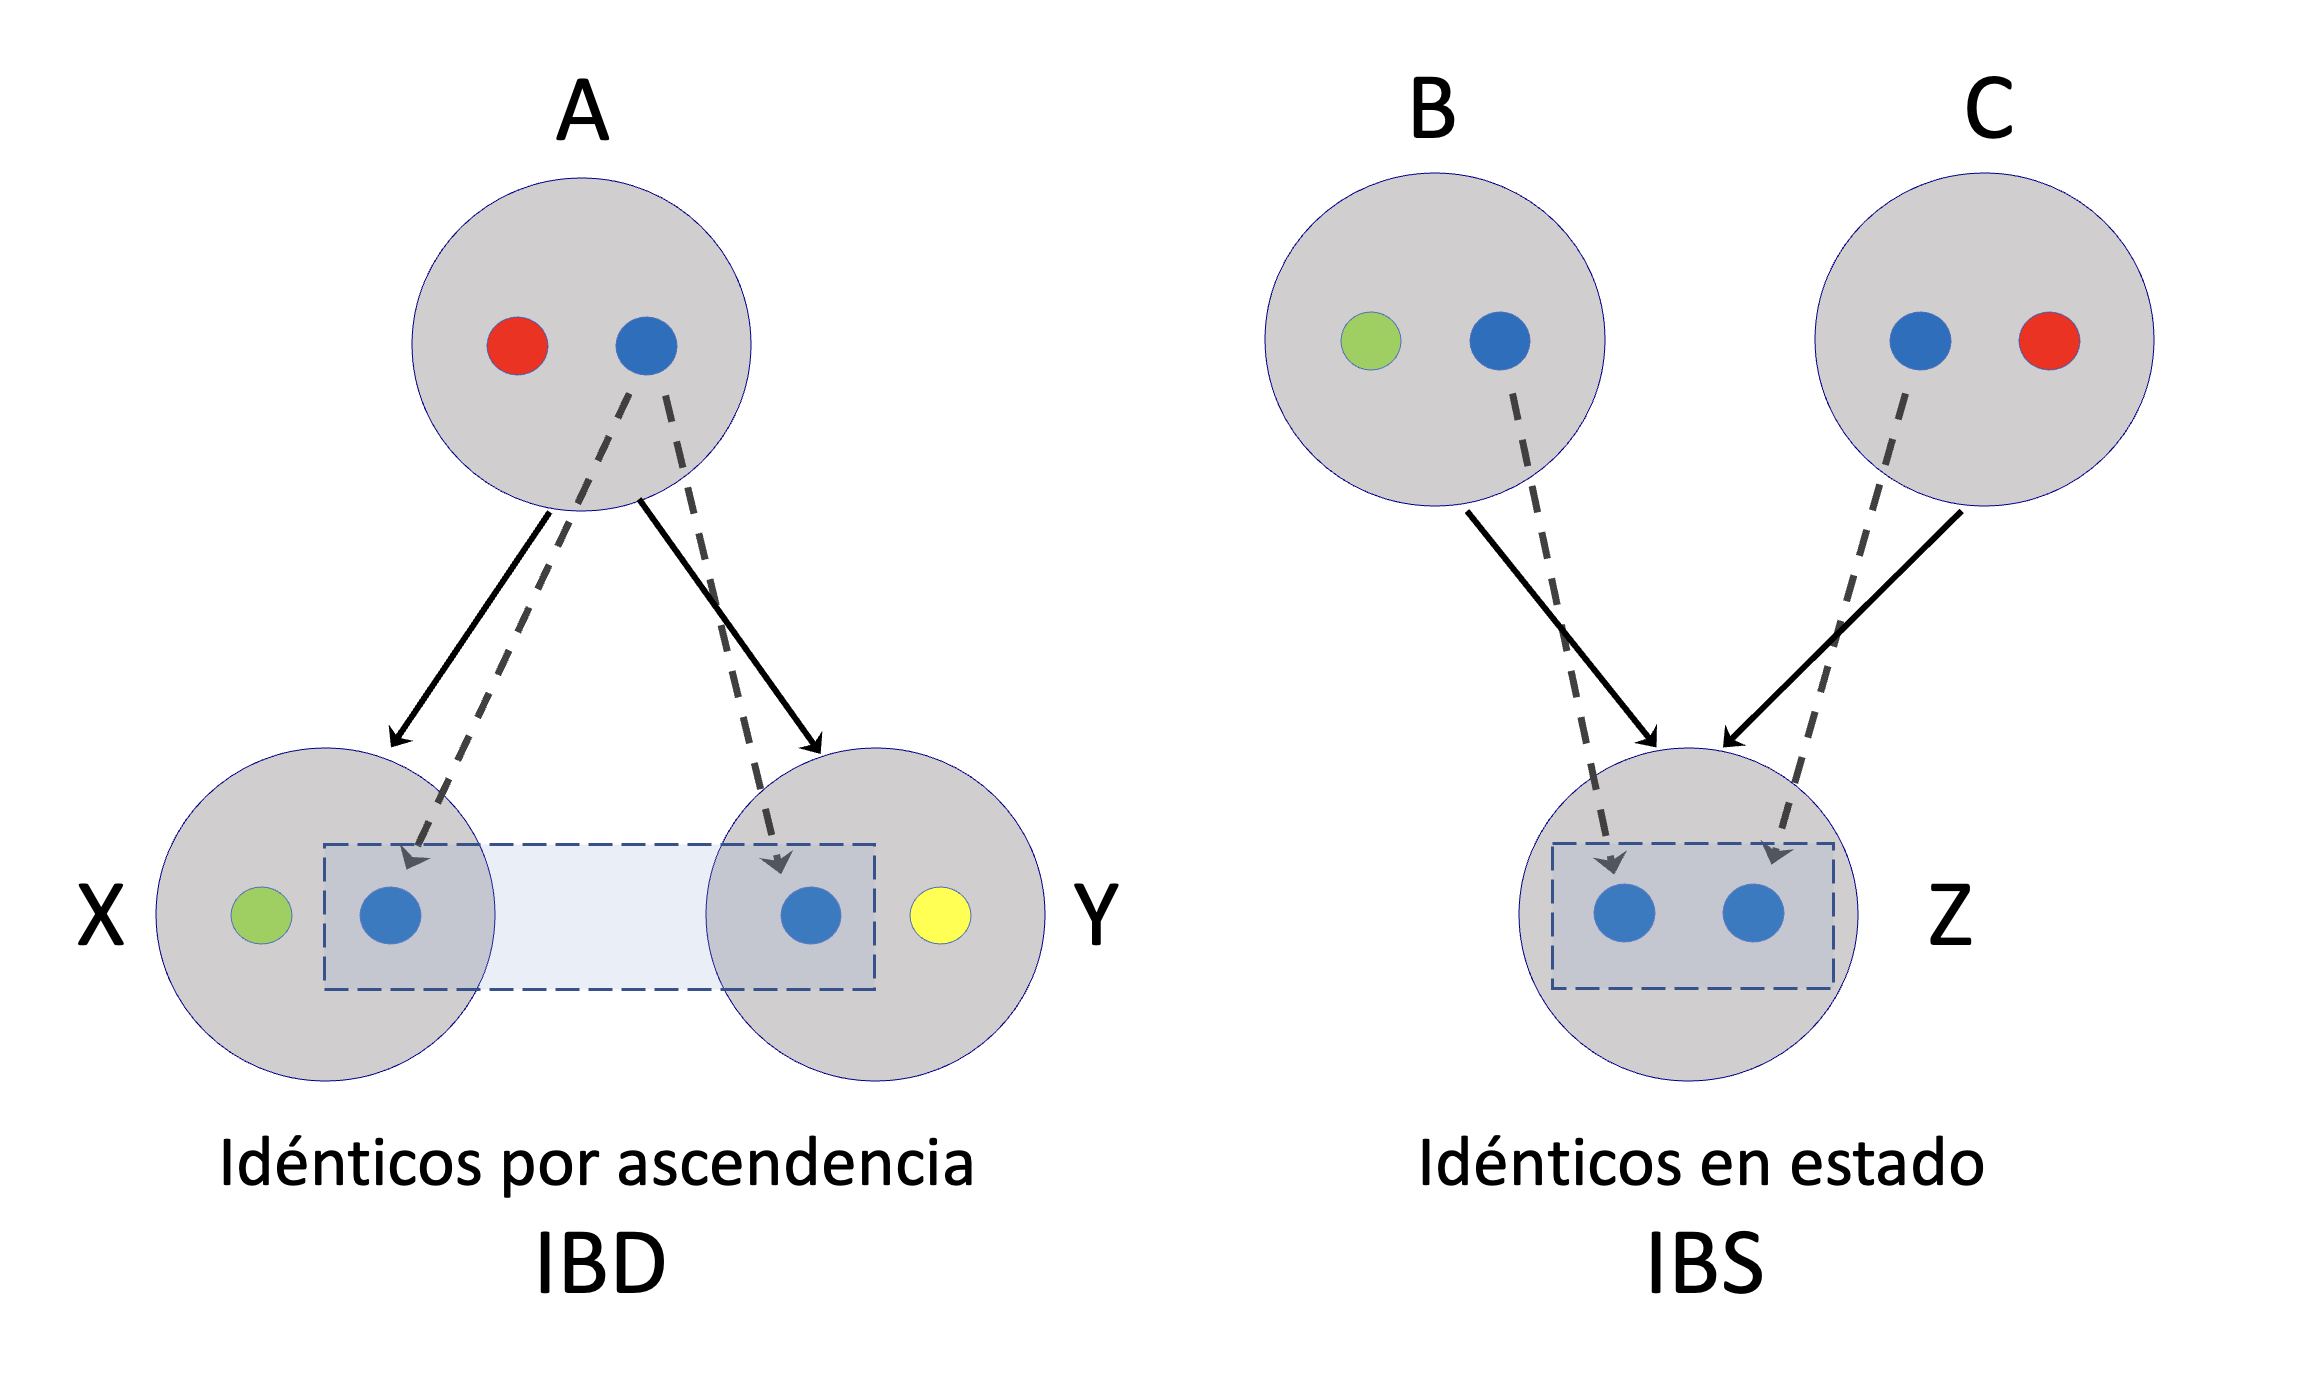 Las dos formas de identidad entre alelos. A la izquierda (identidad por ascendencia, IBD), los alelos azules en los individuos \(X\) e \(Y\) son idénticos porque descienden del mismo alelo en \(A\). En cambio, a la derecha, los alelos azules en \(Z\) son idénticos en estado (IBS), porque no logramos identificar un ancestro desde donde provengan estas dos copias (que claramente debería estar en una generación anterior a \(B\) y \(C\)). Las líneas negras continuas identifican relaciones de ancestría entre individuos, las líneas negras punteadas reflejan relaciones entre alelos, mientras que los rectángulos representan los alelos considerados IBD o IBS según el caso.